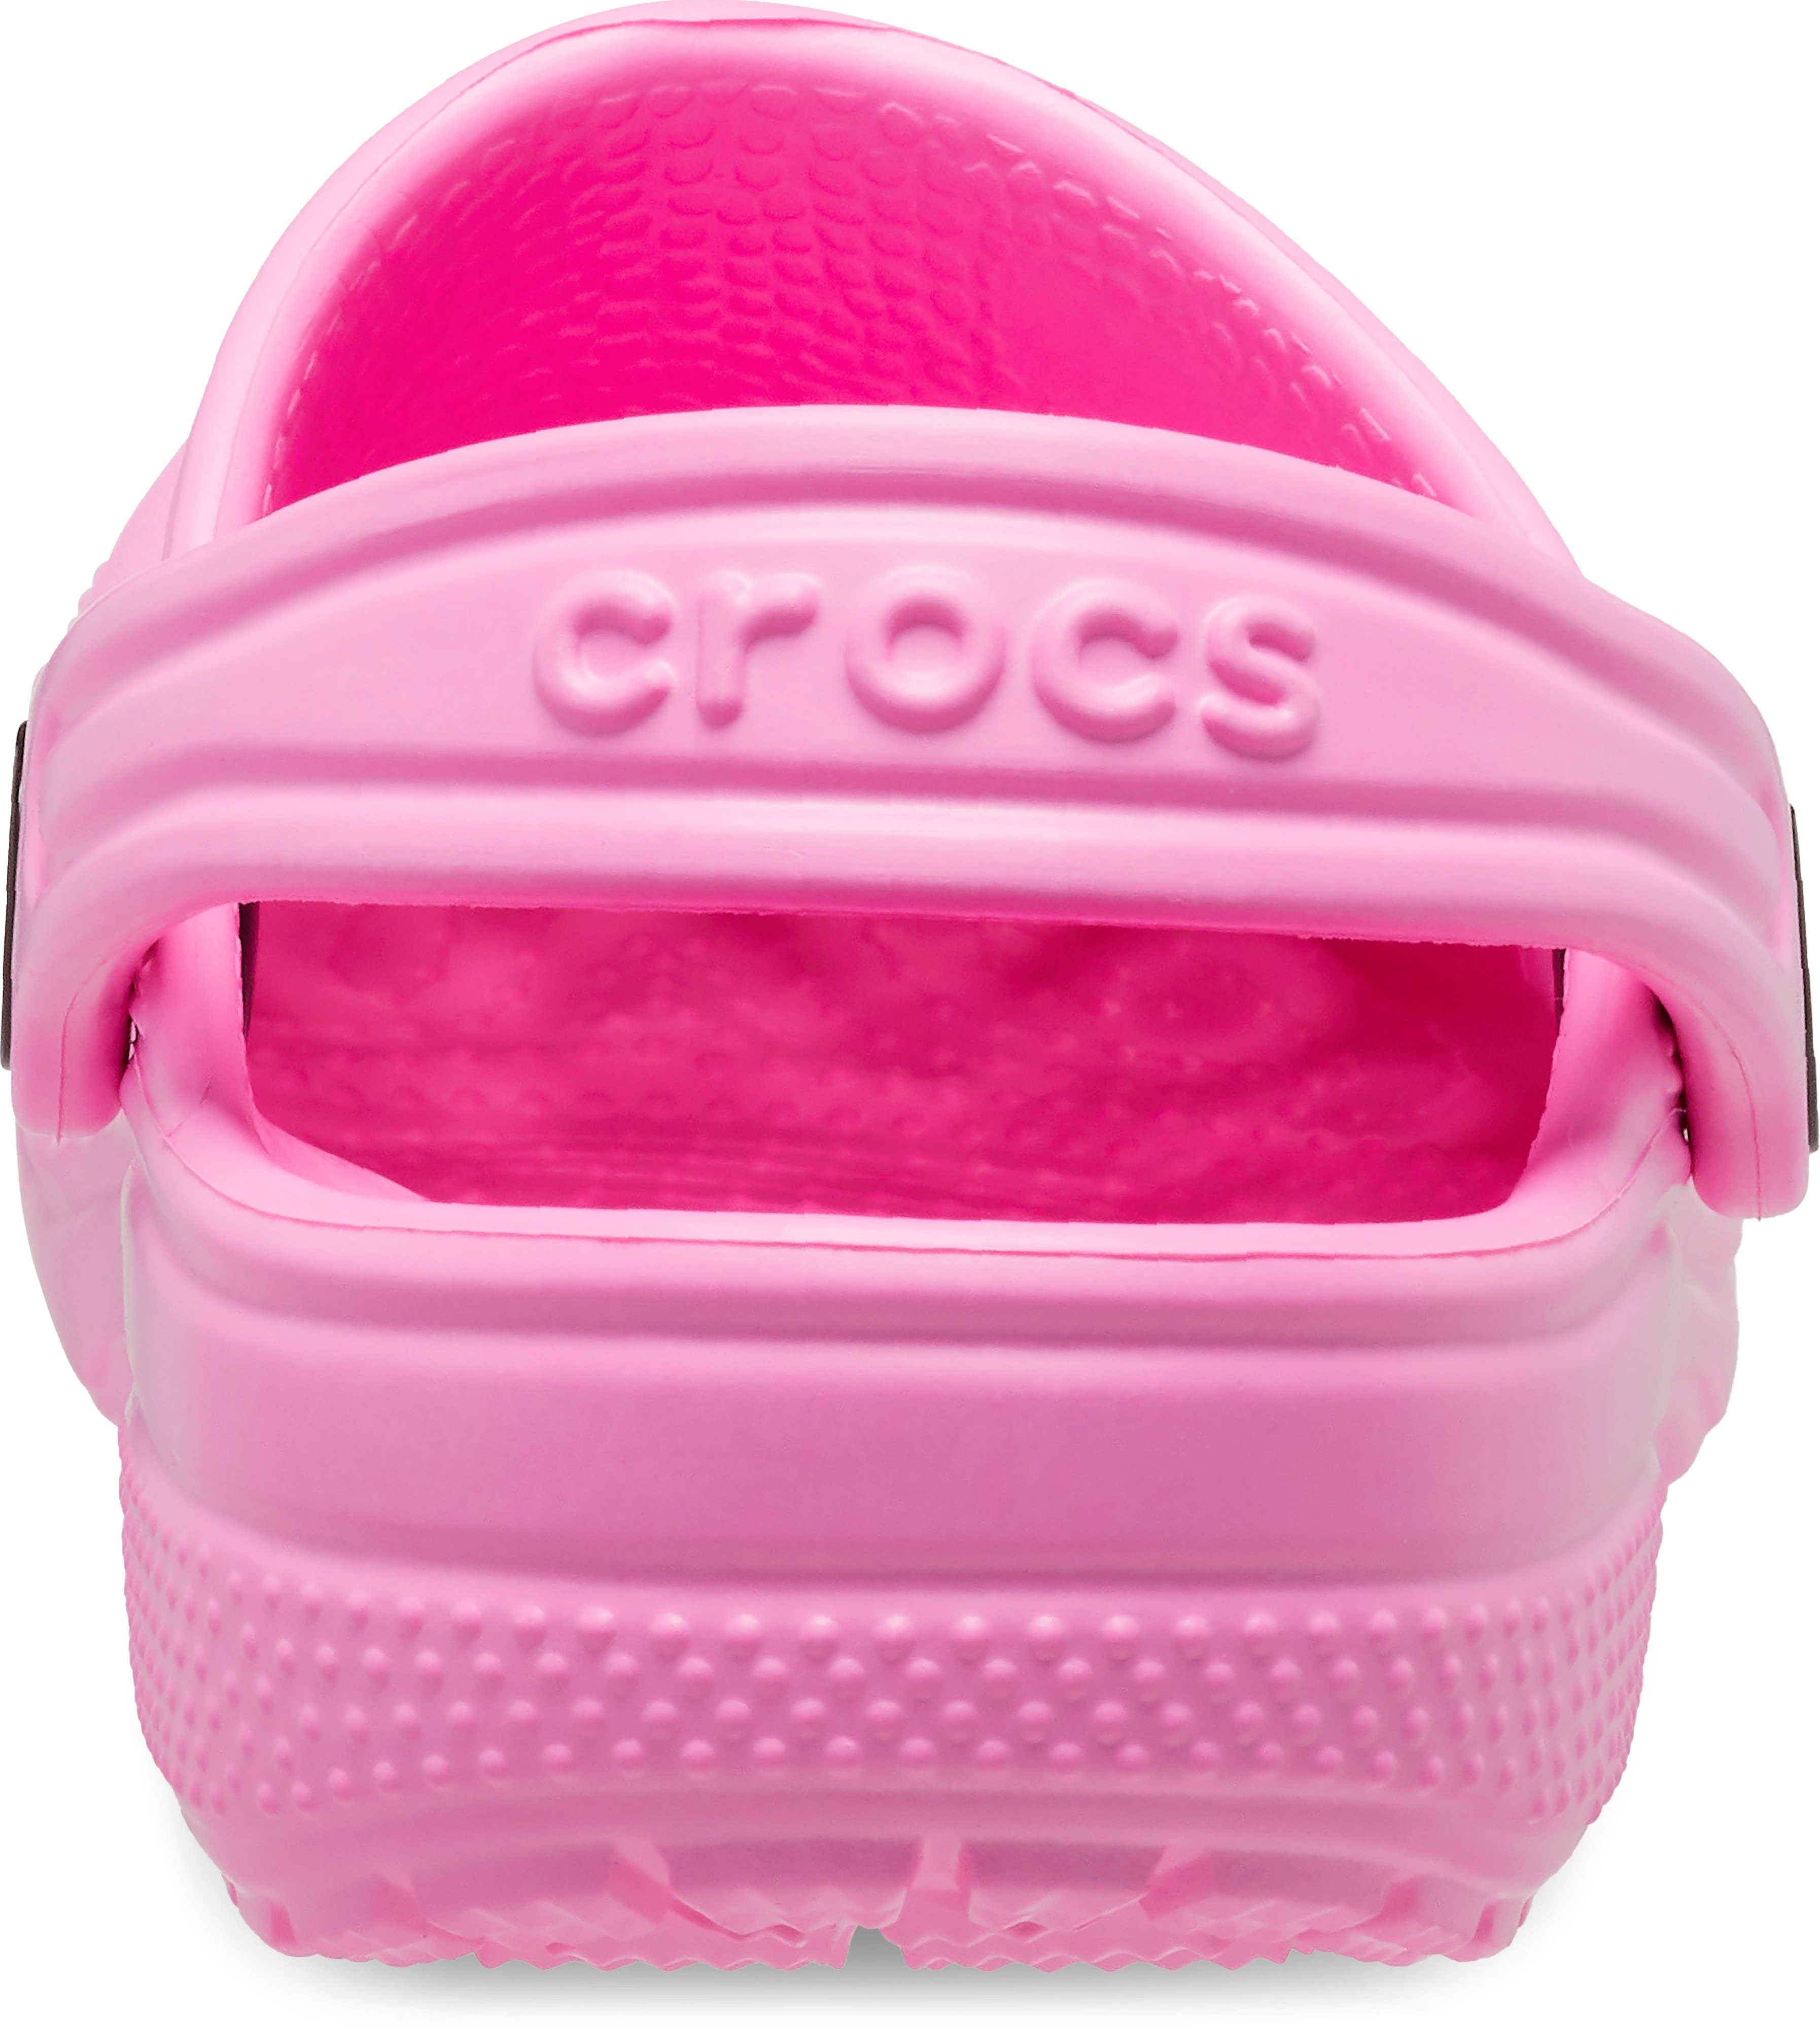 Crocs T Clog pink Clog Classic